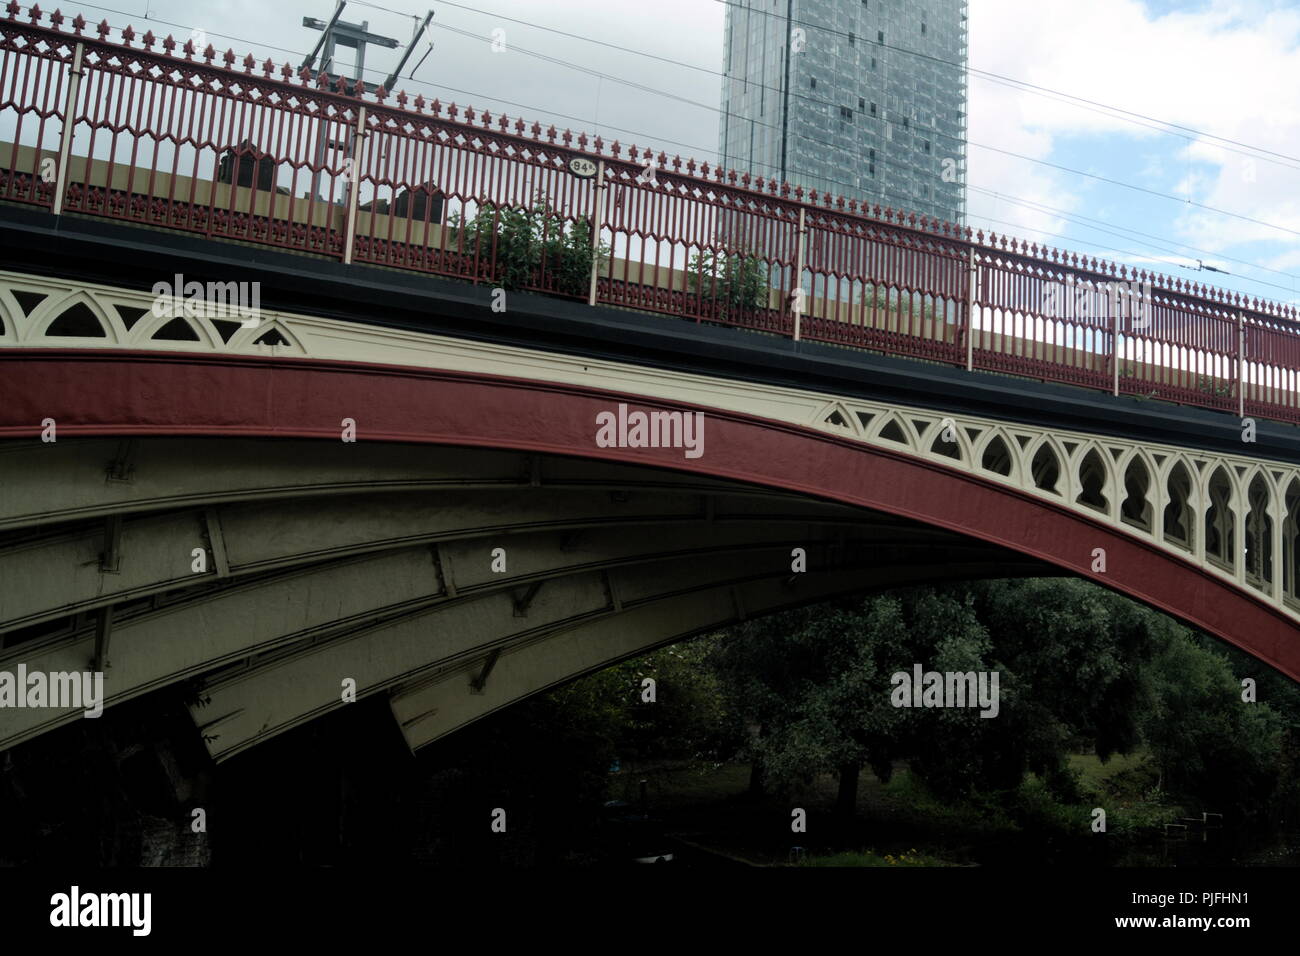 Vista di un ponte ferroviario in ghisa a Castlefields, Manchester, Inghilterra. Gli ampi archi della struttura vittoriana forniscono eleganza e bellezza. Foto Stock